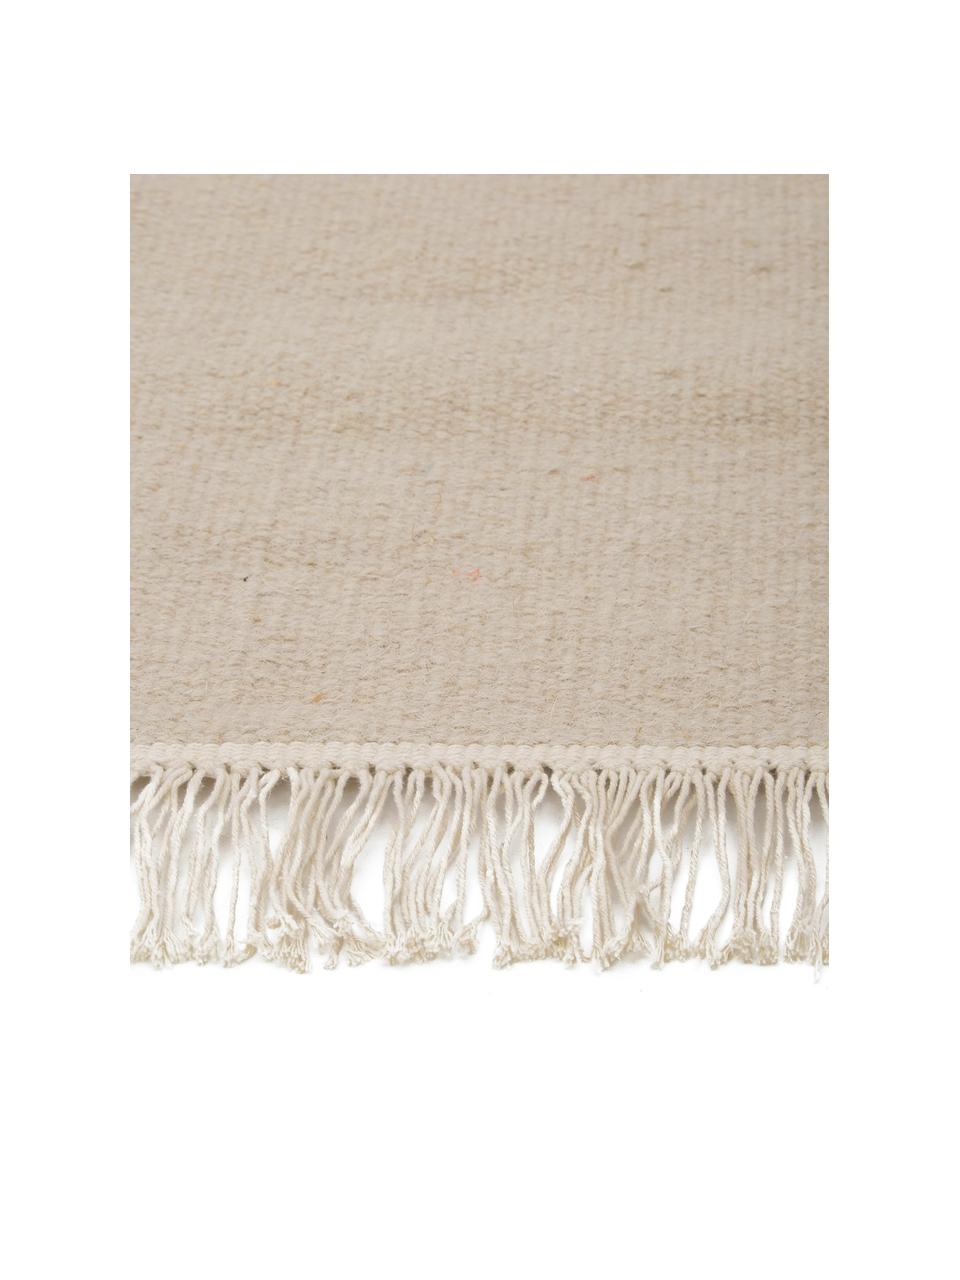 Tapis kilim en laine beige tissé main Rainbow, Couleur sable, larg. 200 x long. 300 cm (taille L)